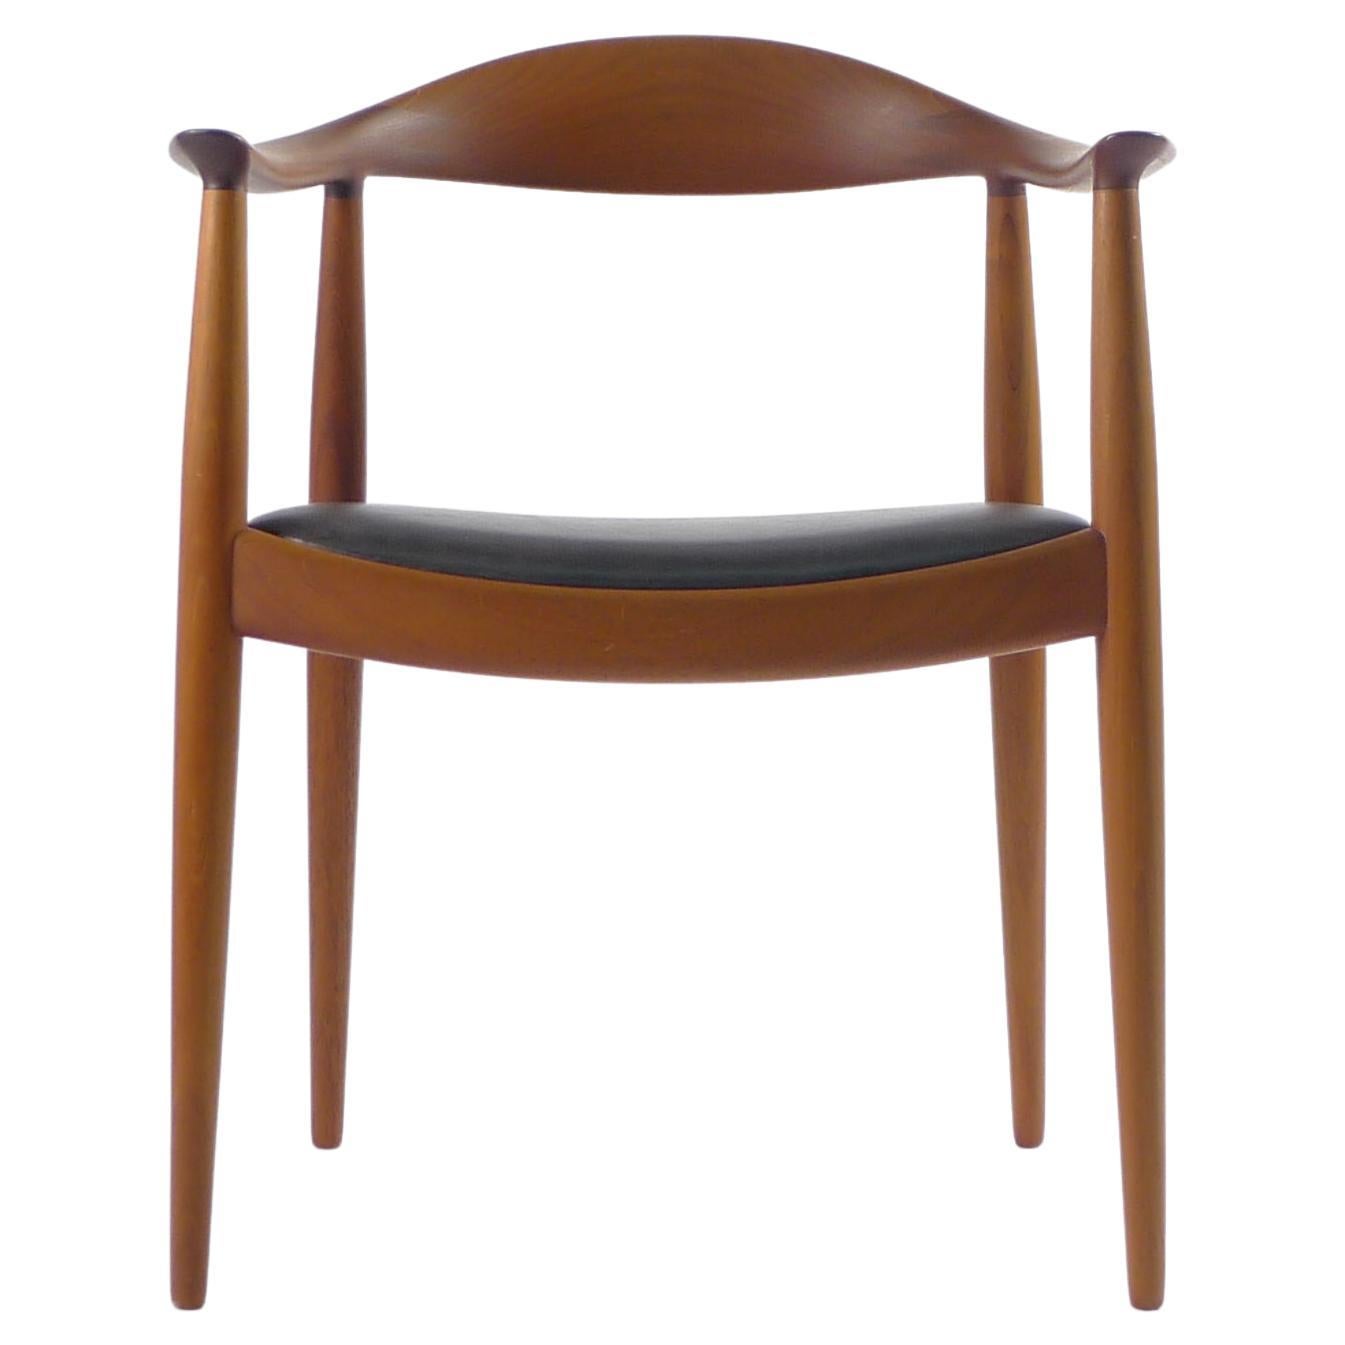 Hans J Wegner, the Chair/Round Chair, Design 1949, for Johannes Hansen, Denmark